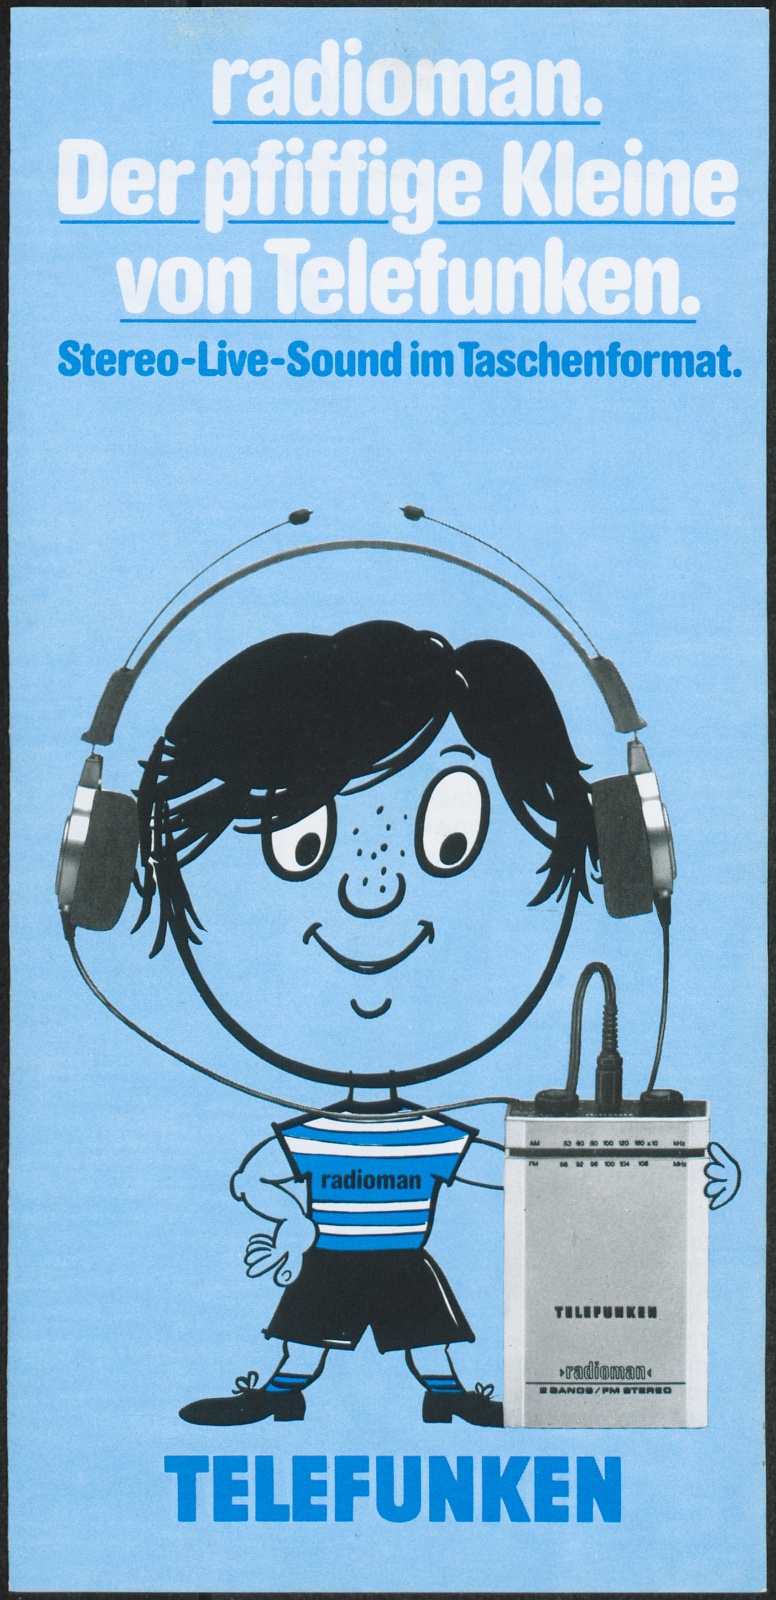 Werbeprospekt: radioman. Der pfiffige Kleine von Telefunken. Stereo-Live-Sound im Taschenformat. (Stiftung Deutsches Technikmuseum Berlin CC0)